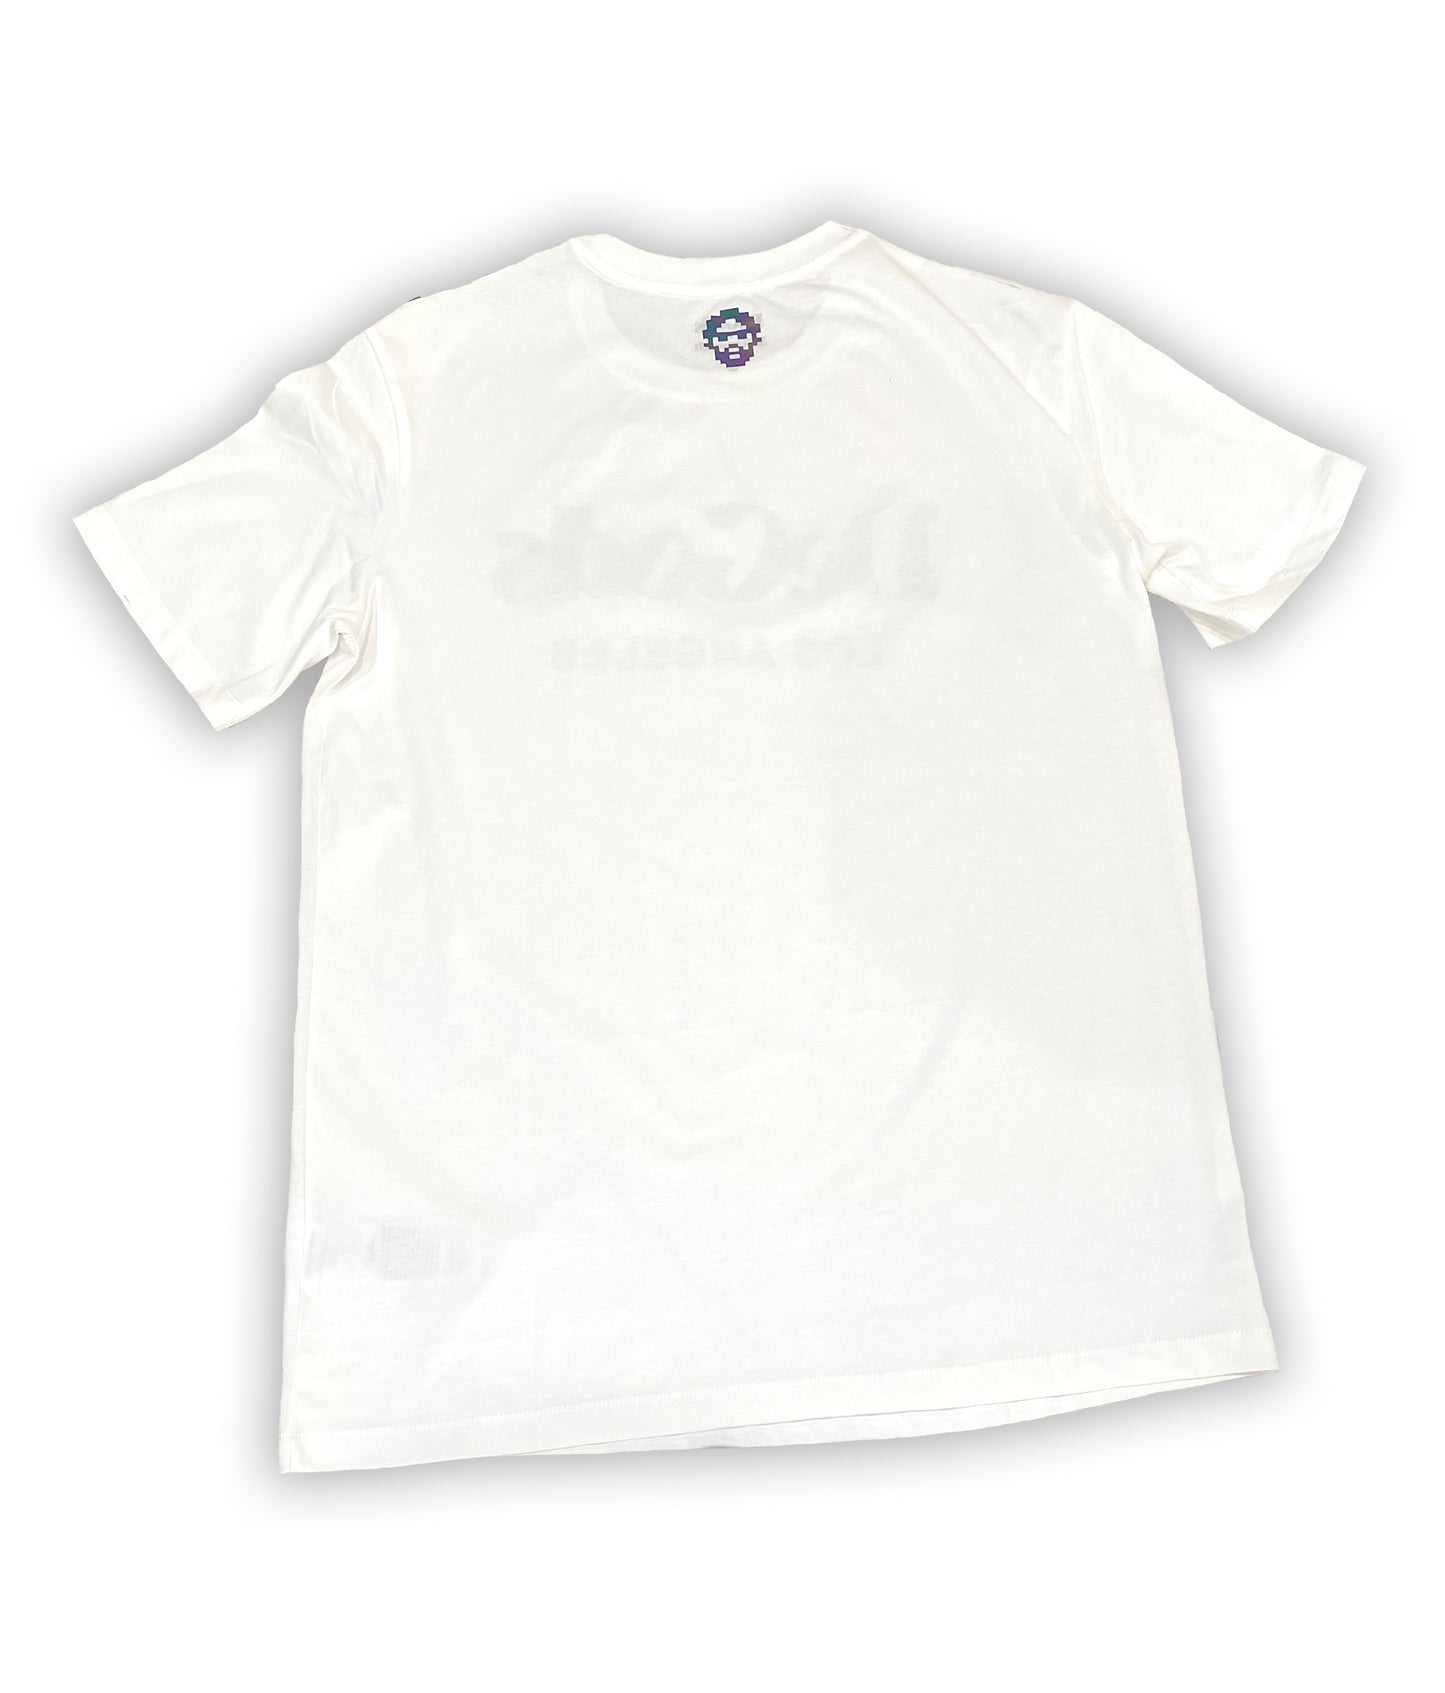 White DeGods T-Shirt with Black/Reflective Logo